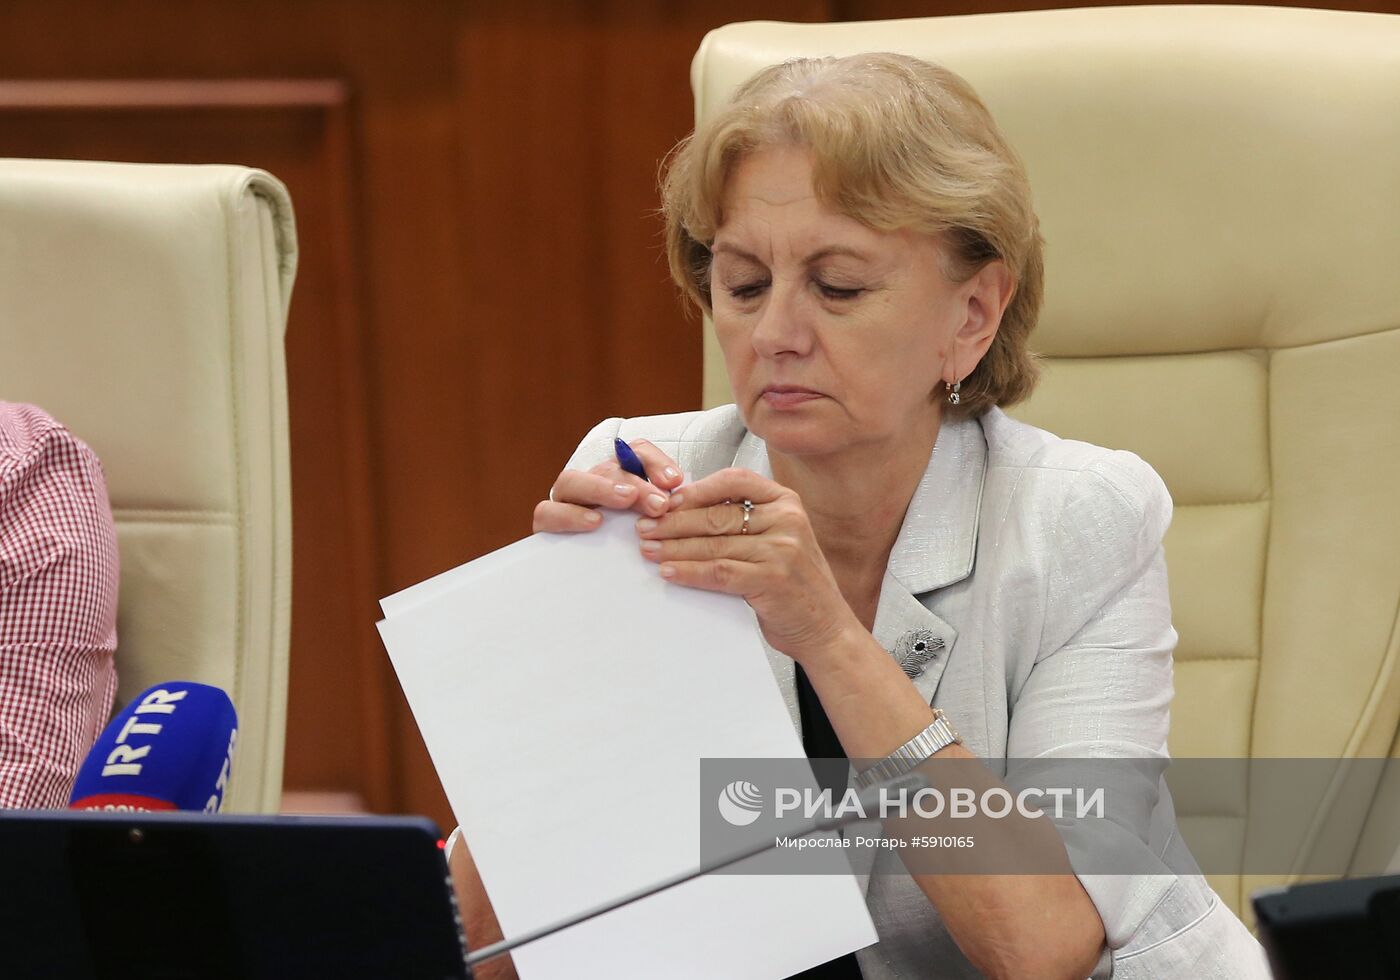 Заседание парламента Молдавии 